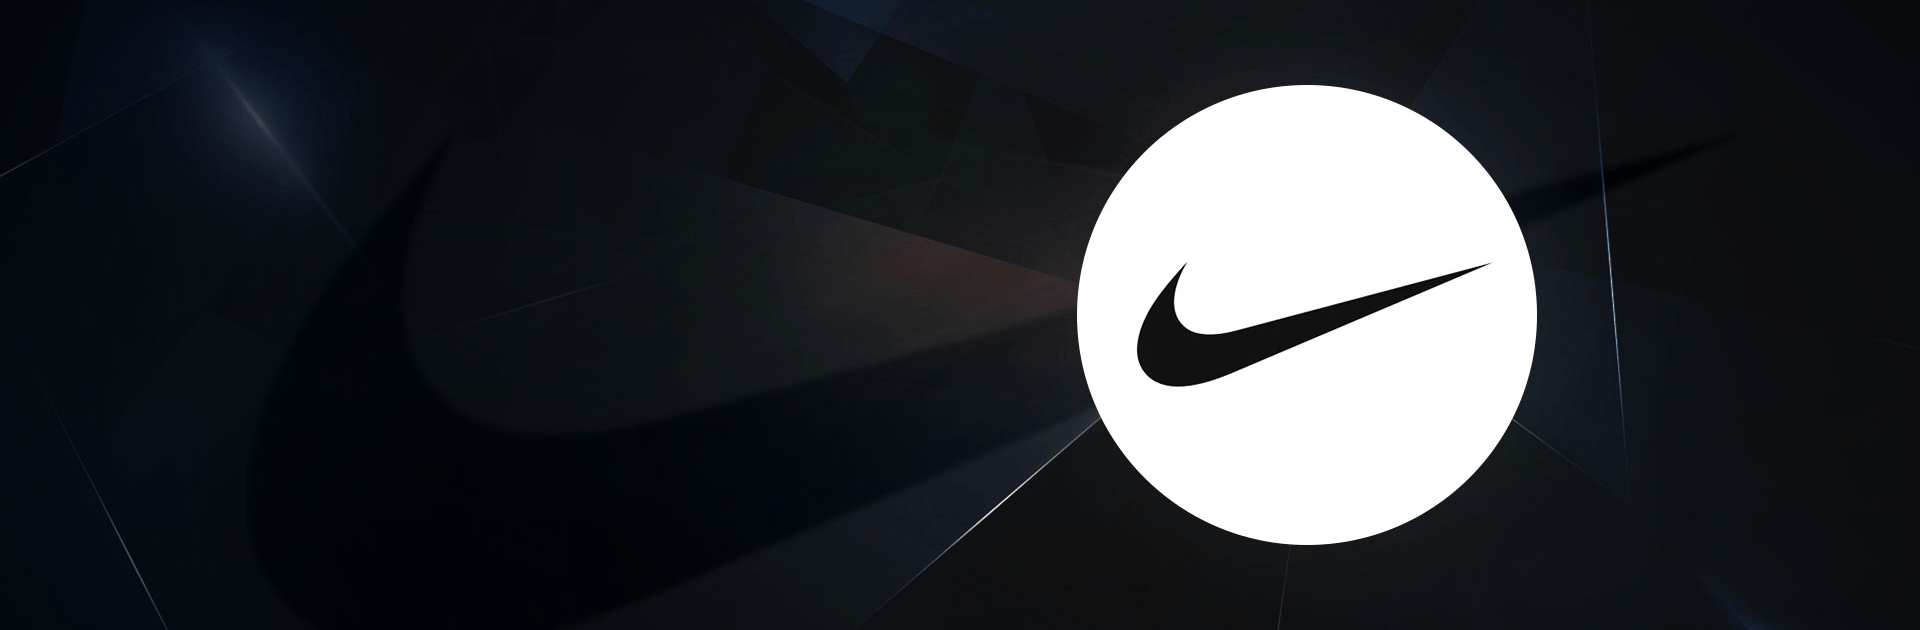 Nike:나이키 신발, 스포츠 패션, 스트리트웨어 쇼핑